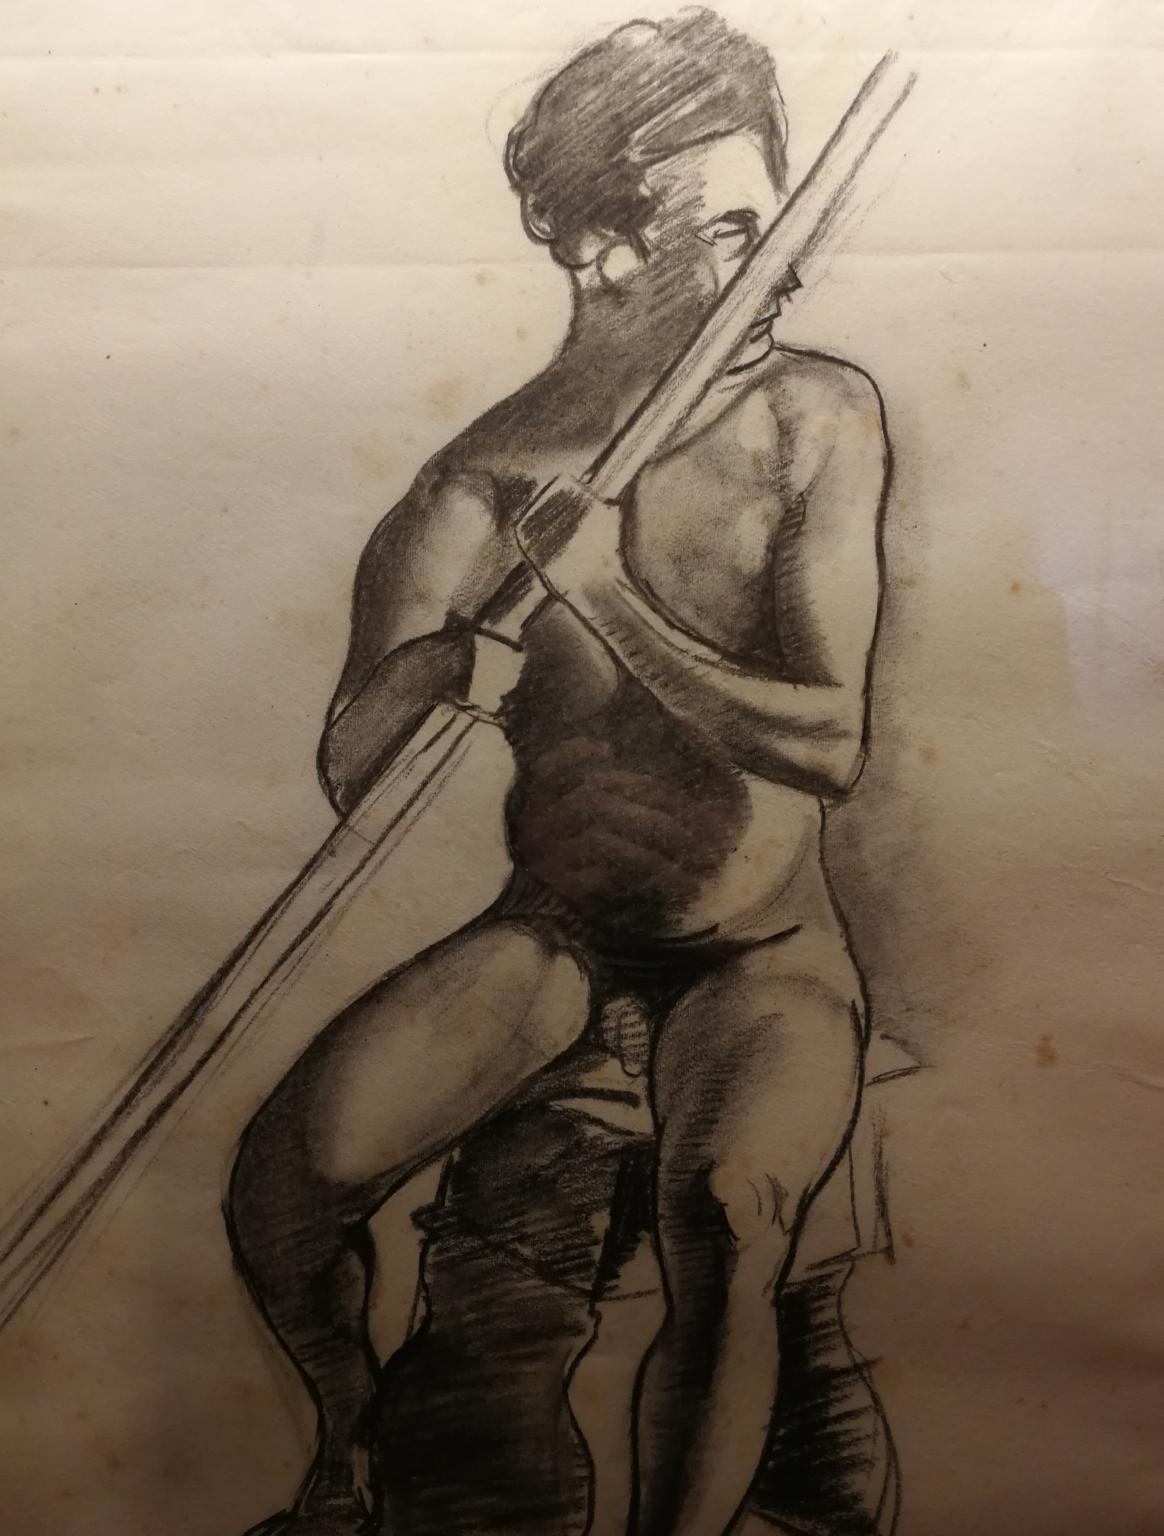 Signiert G. ColacicchI, männliches Aktporträt, Kohlezeichnung, datiert 1924